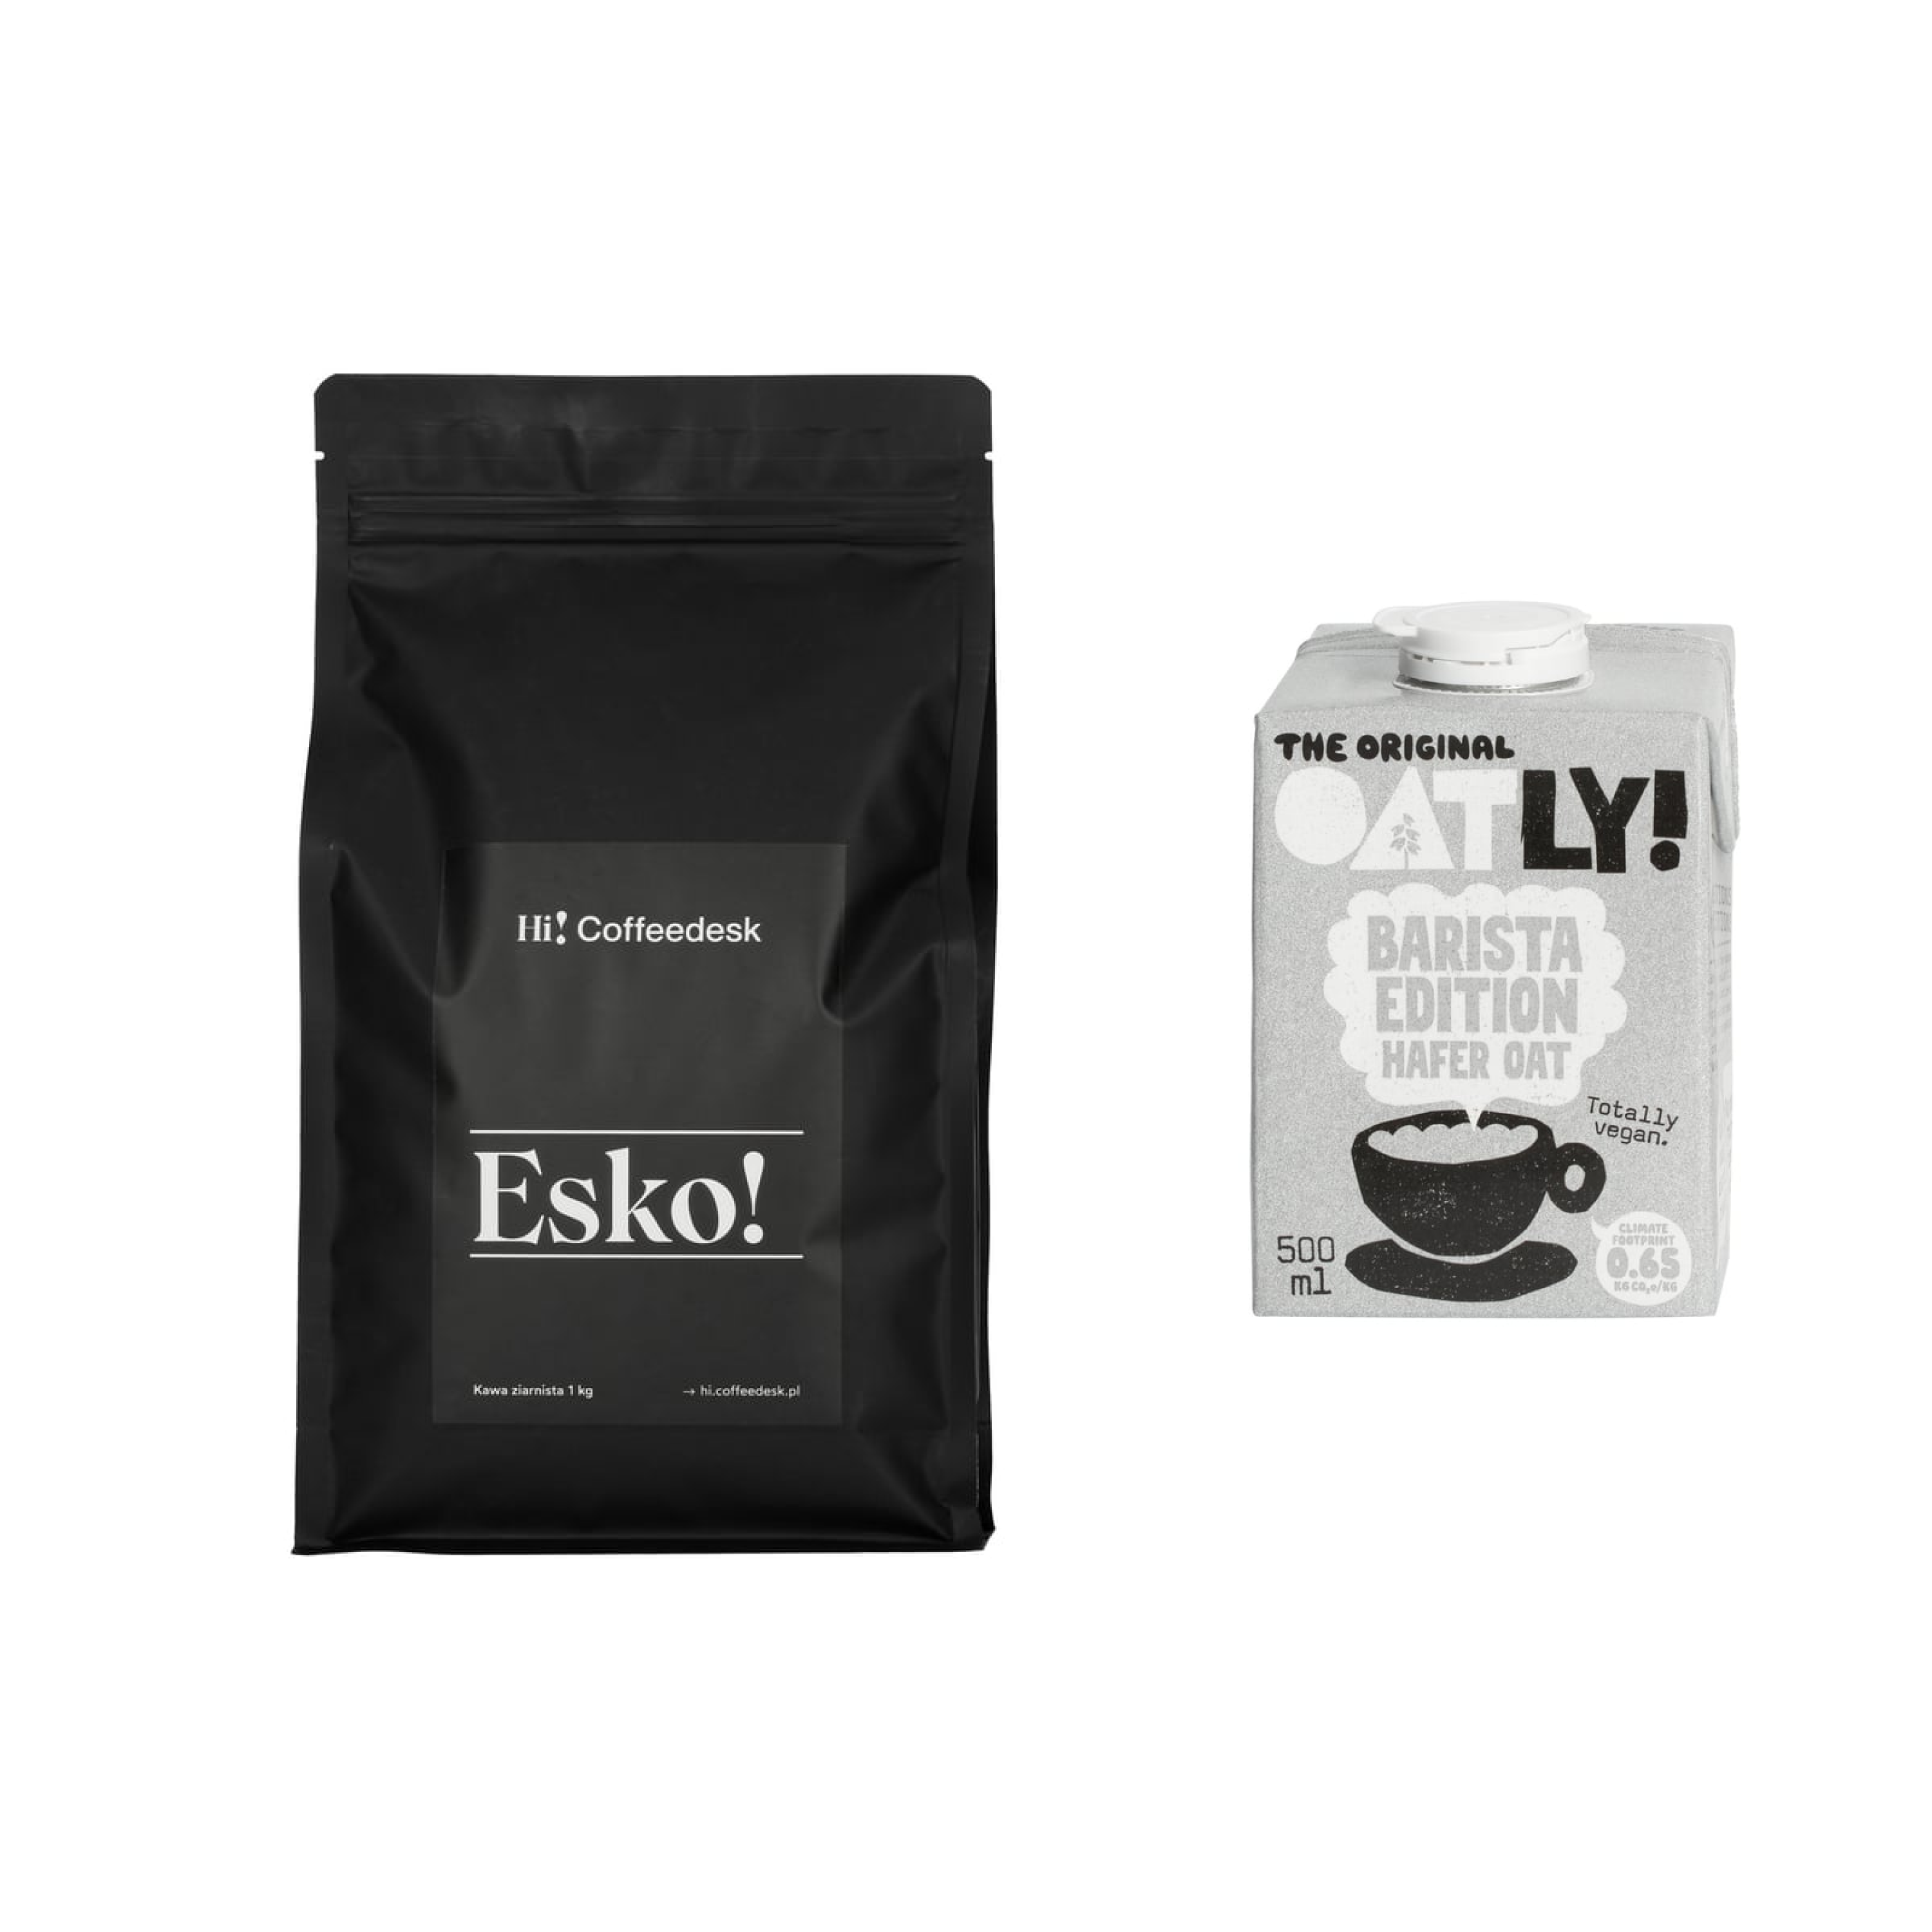 Zestaw Hi! Coffeedesk Esko ESP 1kg + Oatly Barista 500ml